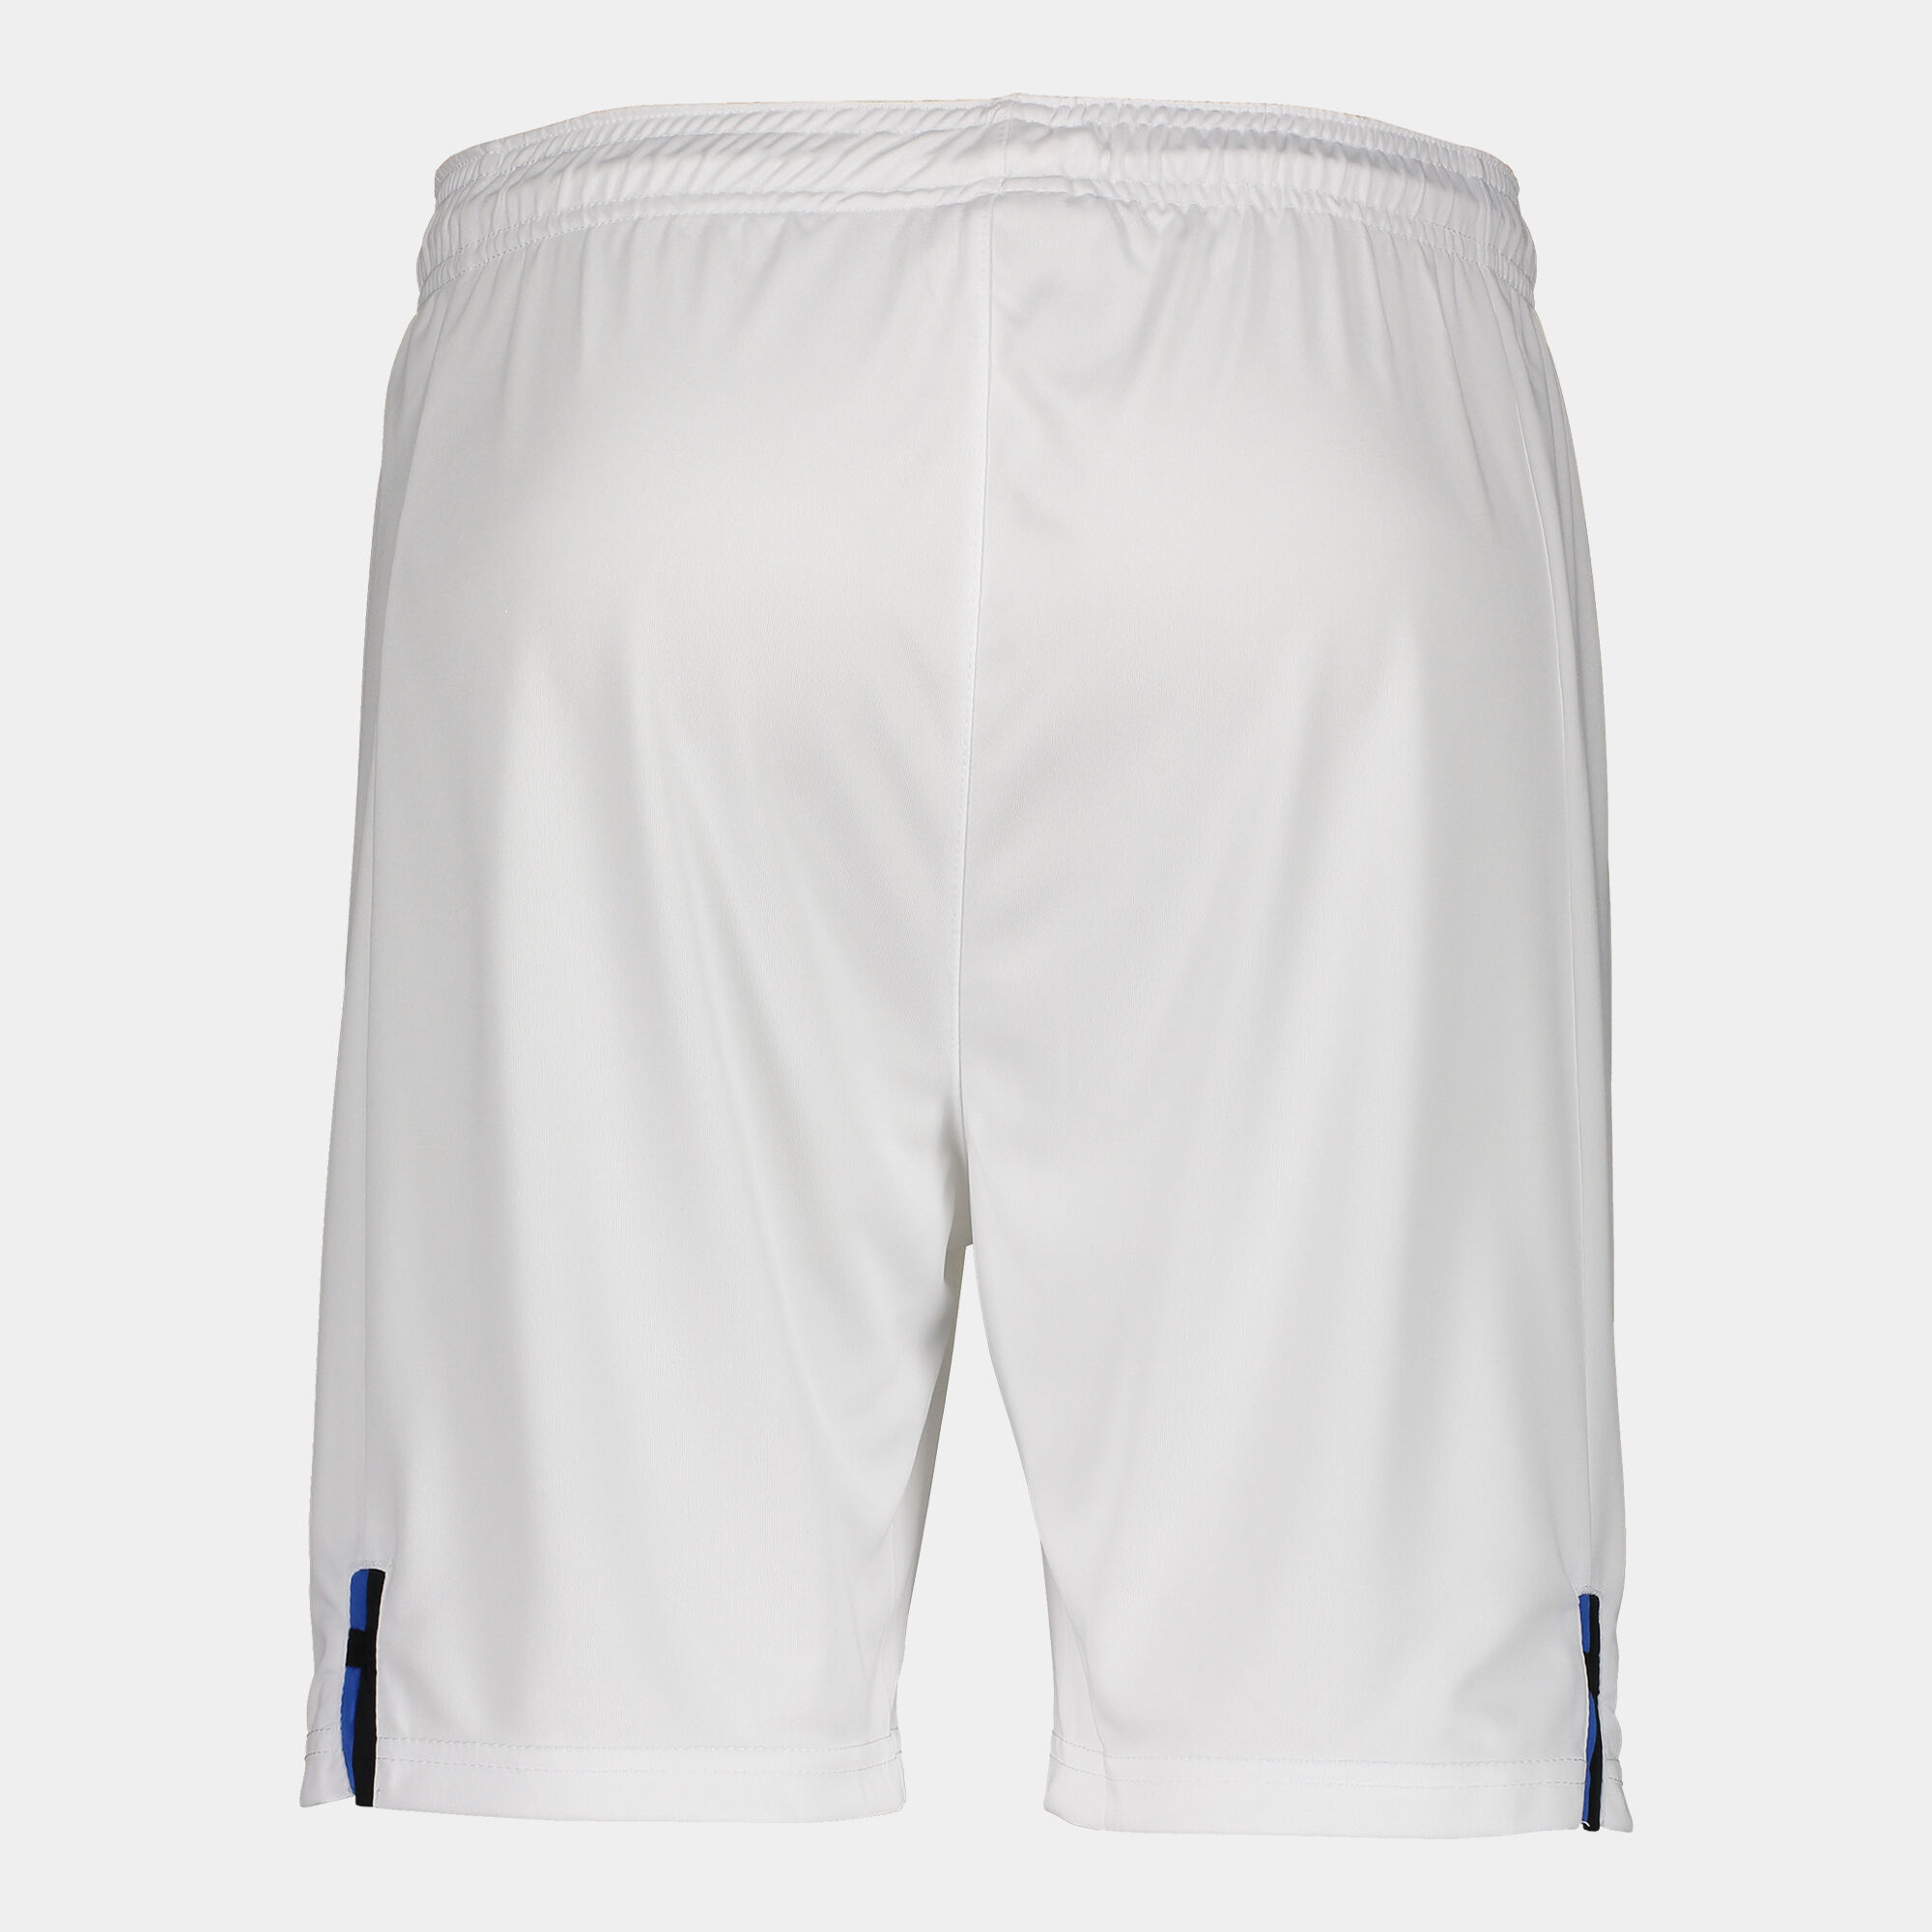 Shorts away kit Atalanta 22/23